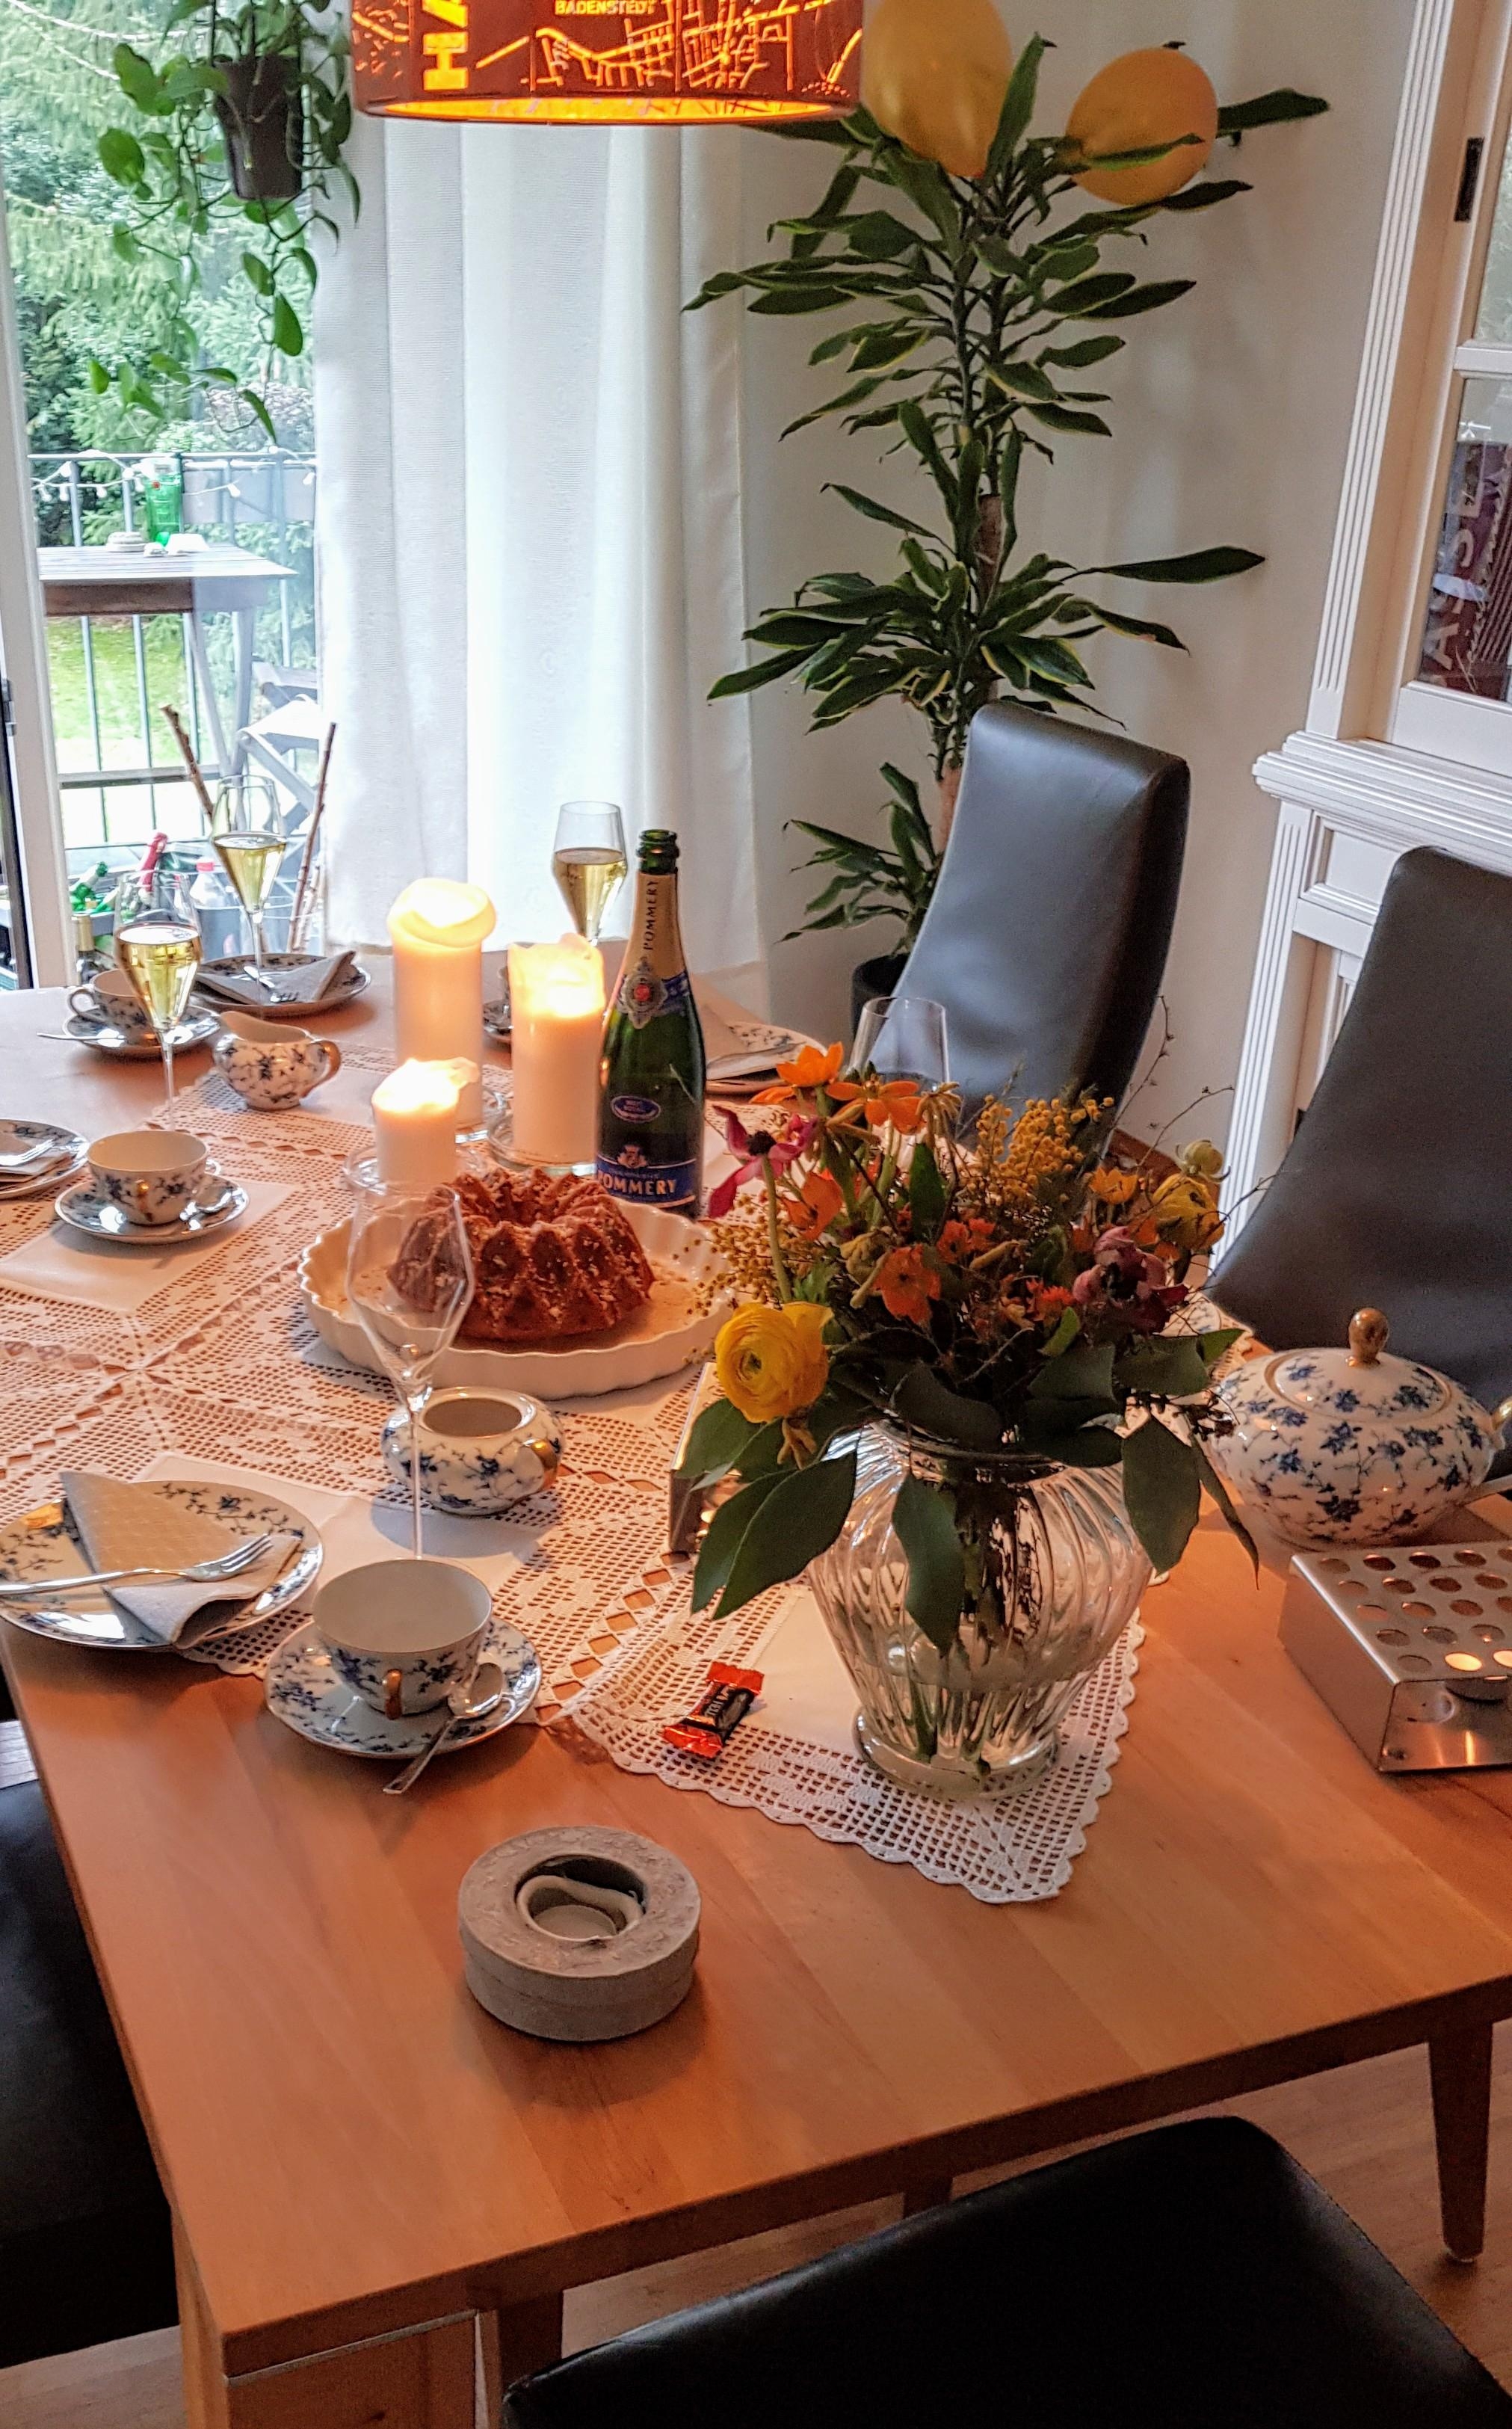 Tisch für den Kaffeekranz vorbereitet... mit geerbtem Geschirr von Oma 1 und geschenkter Häkeldecke von Oma 2. 🍰☕